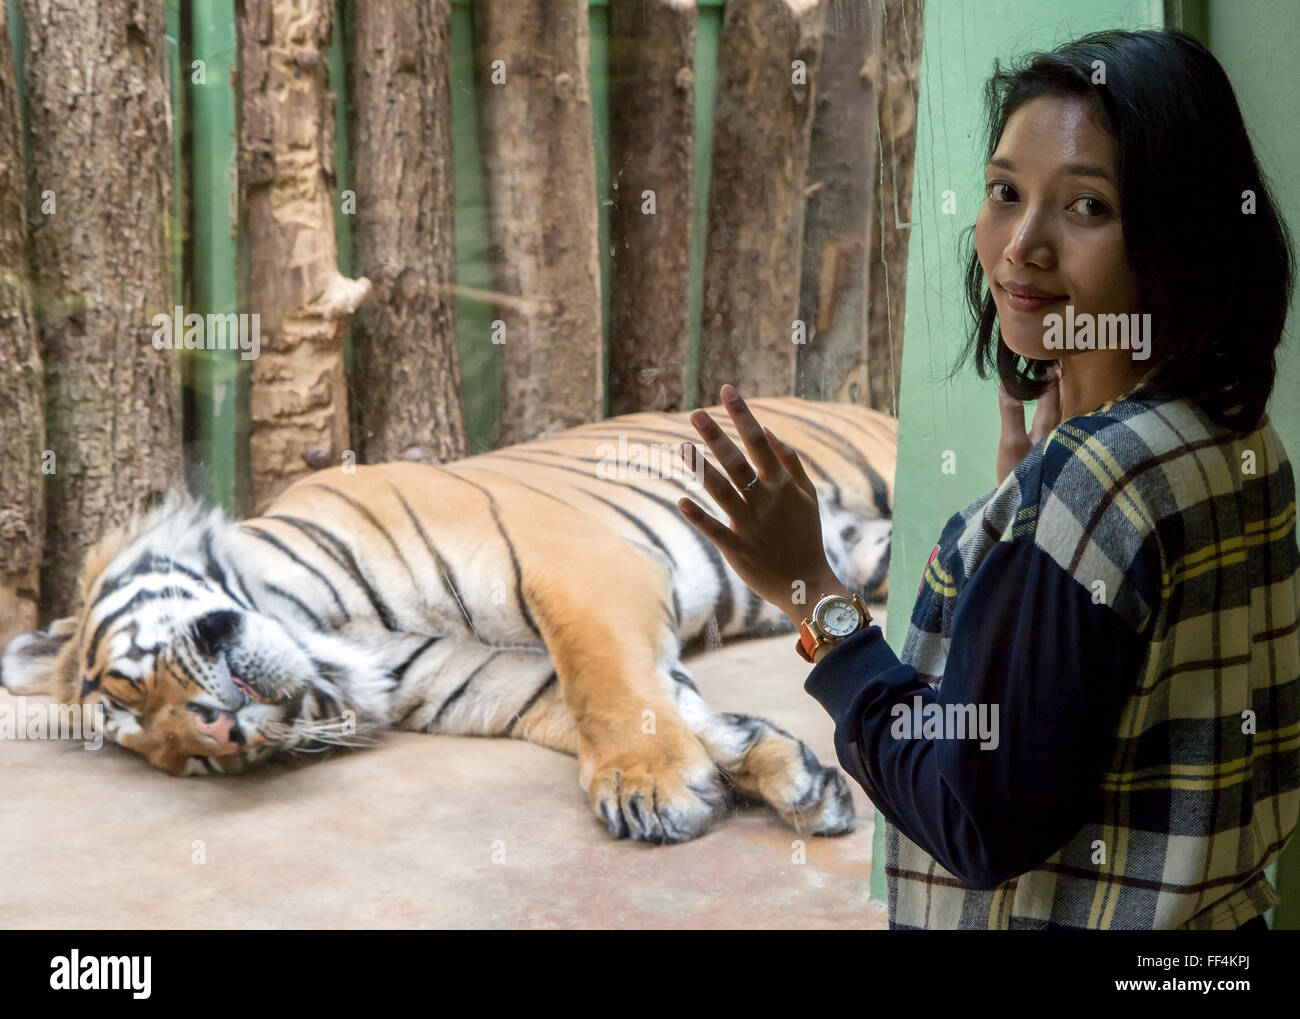 Zoo ai visitatori la visione di una tigre che giace dietro il vetro Foto Stock